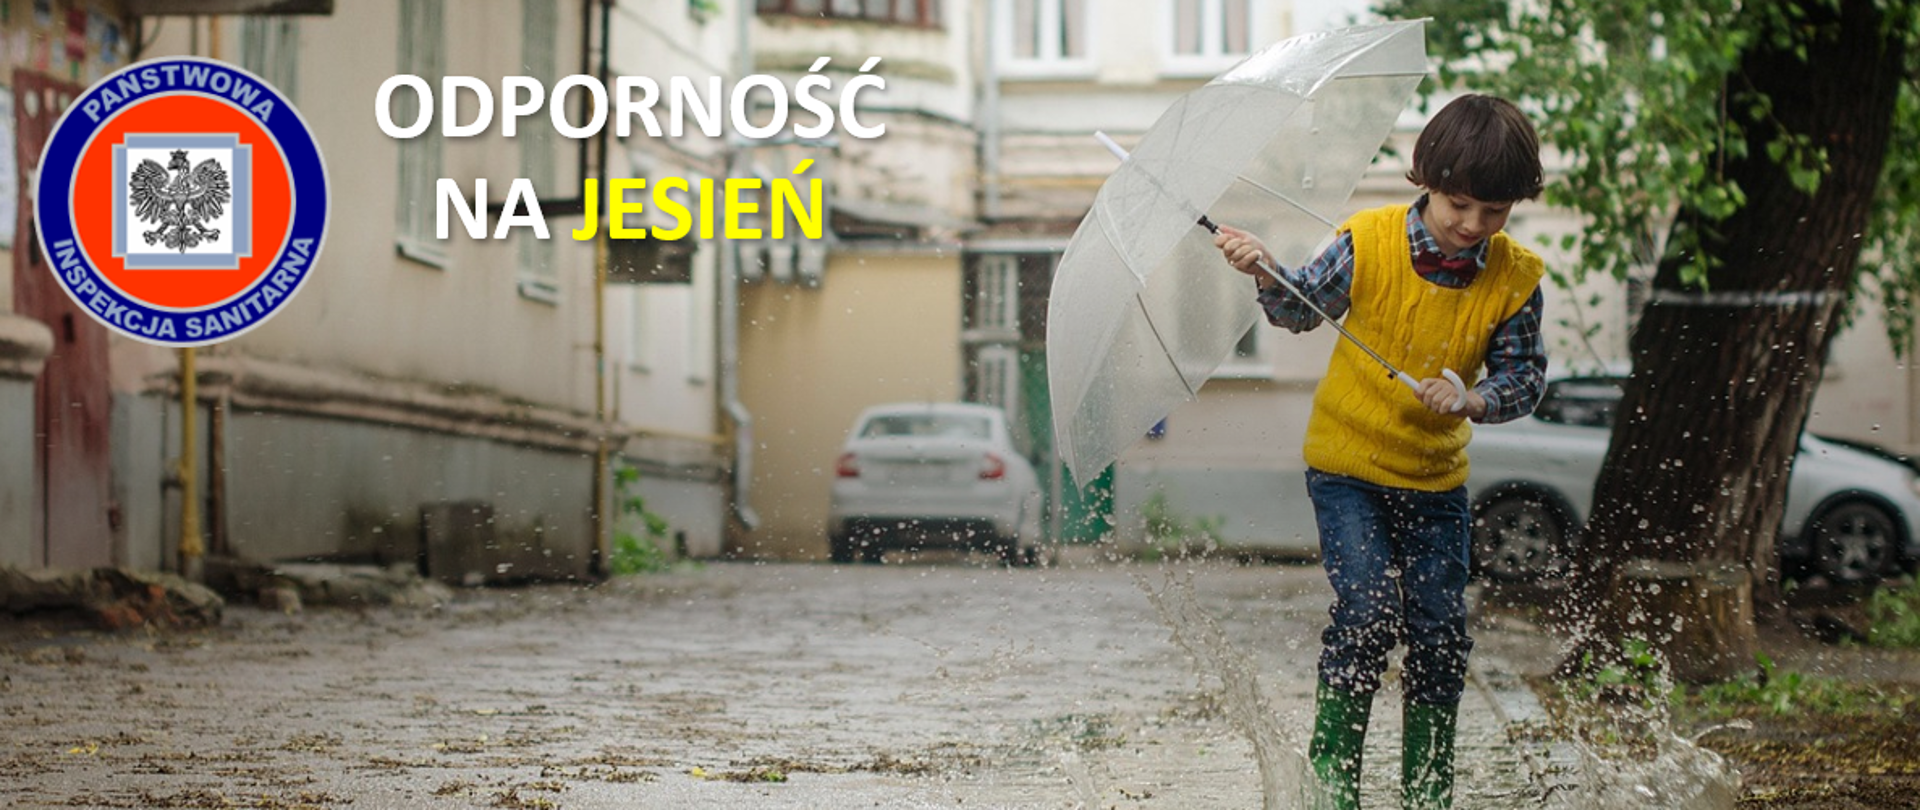 grafika przedstawia chłopca z parasolem i w gumowcach, które umożliwiają mu zabawę w kałuży